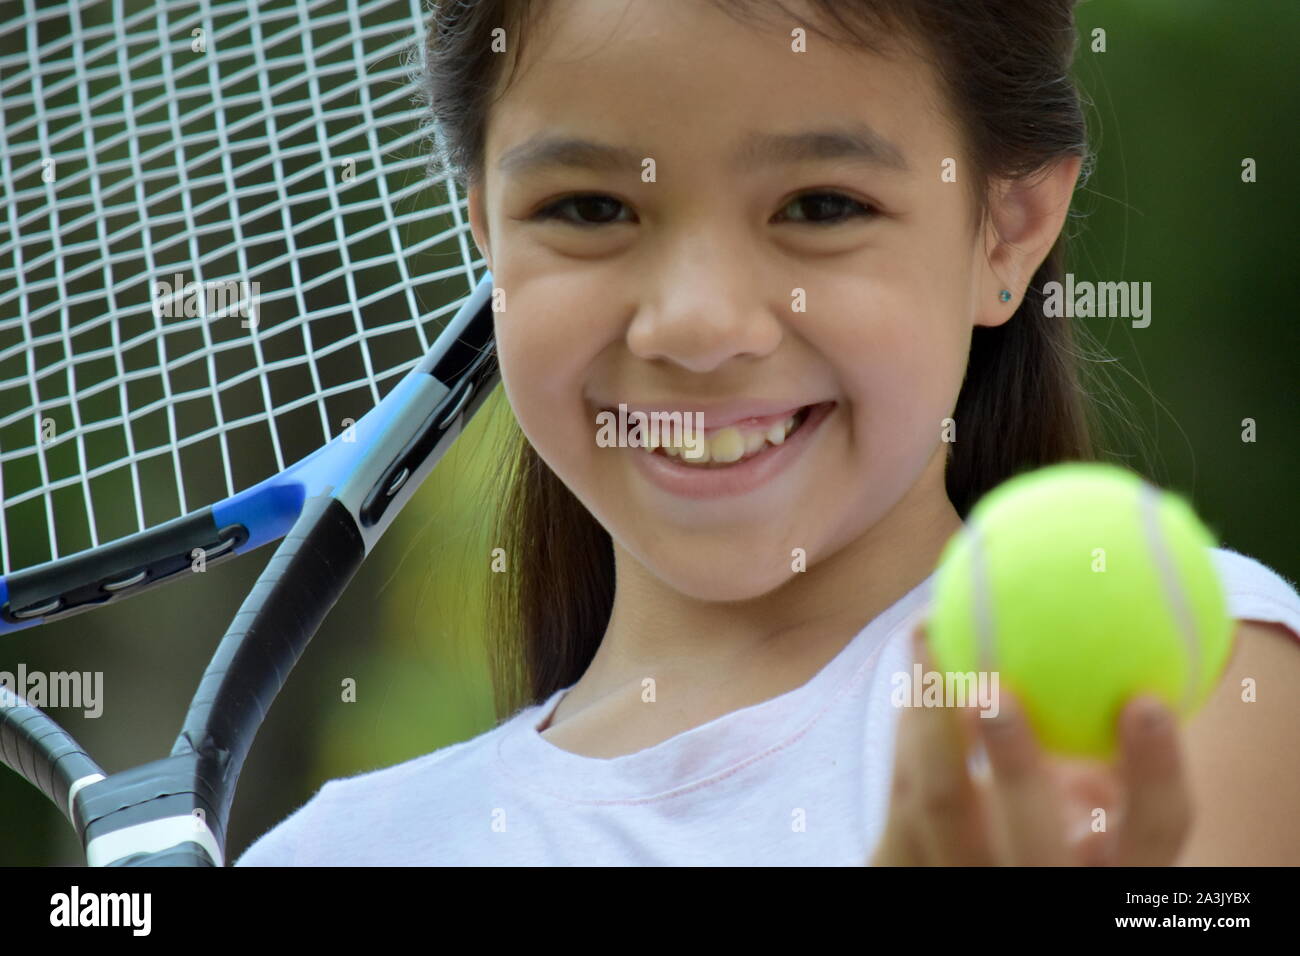 Enfant de la minorité sportive tennis Player Smiling Banque D'Images